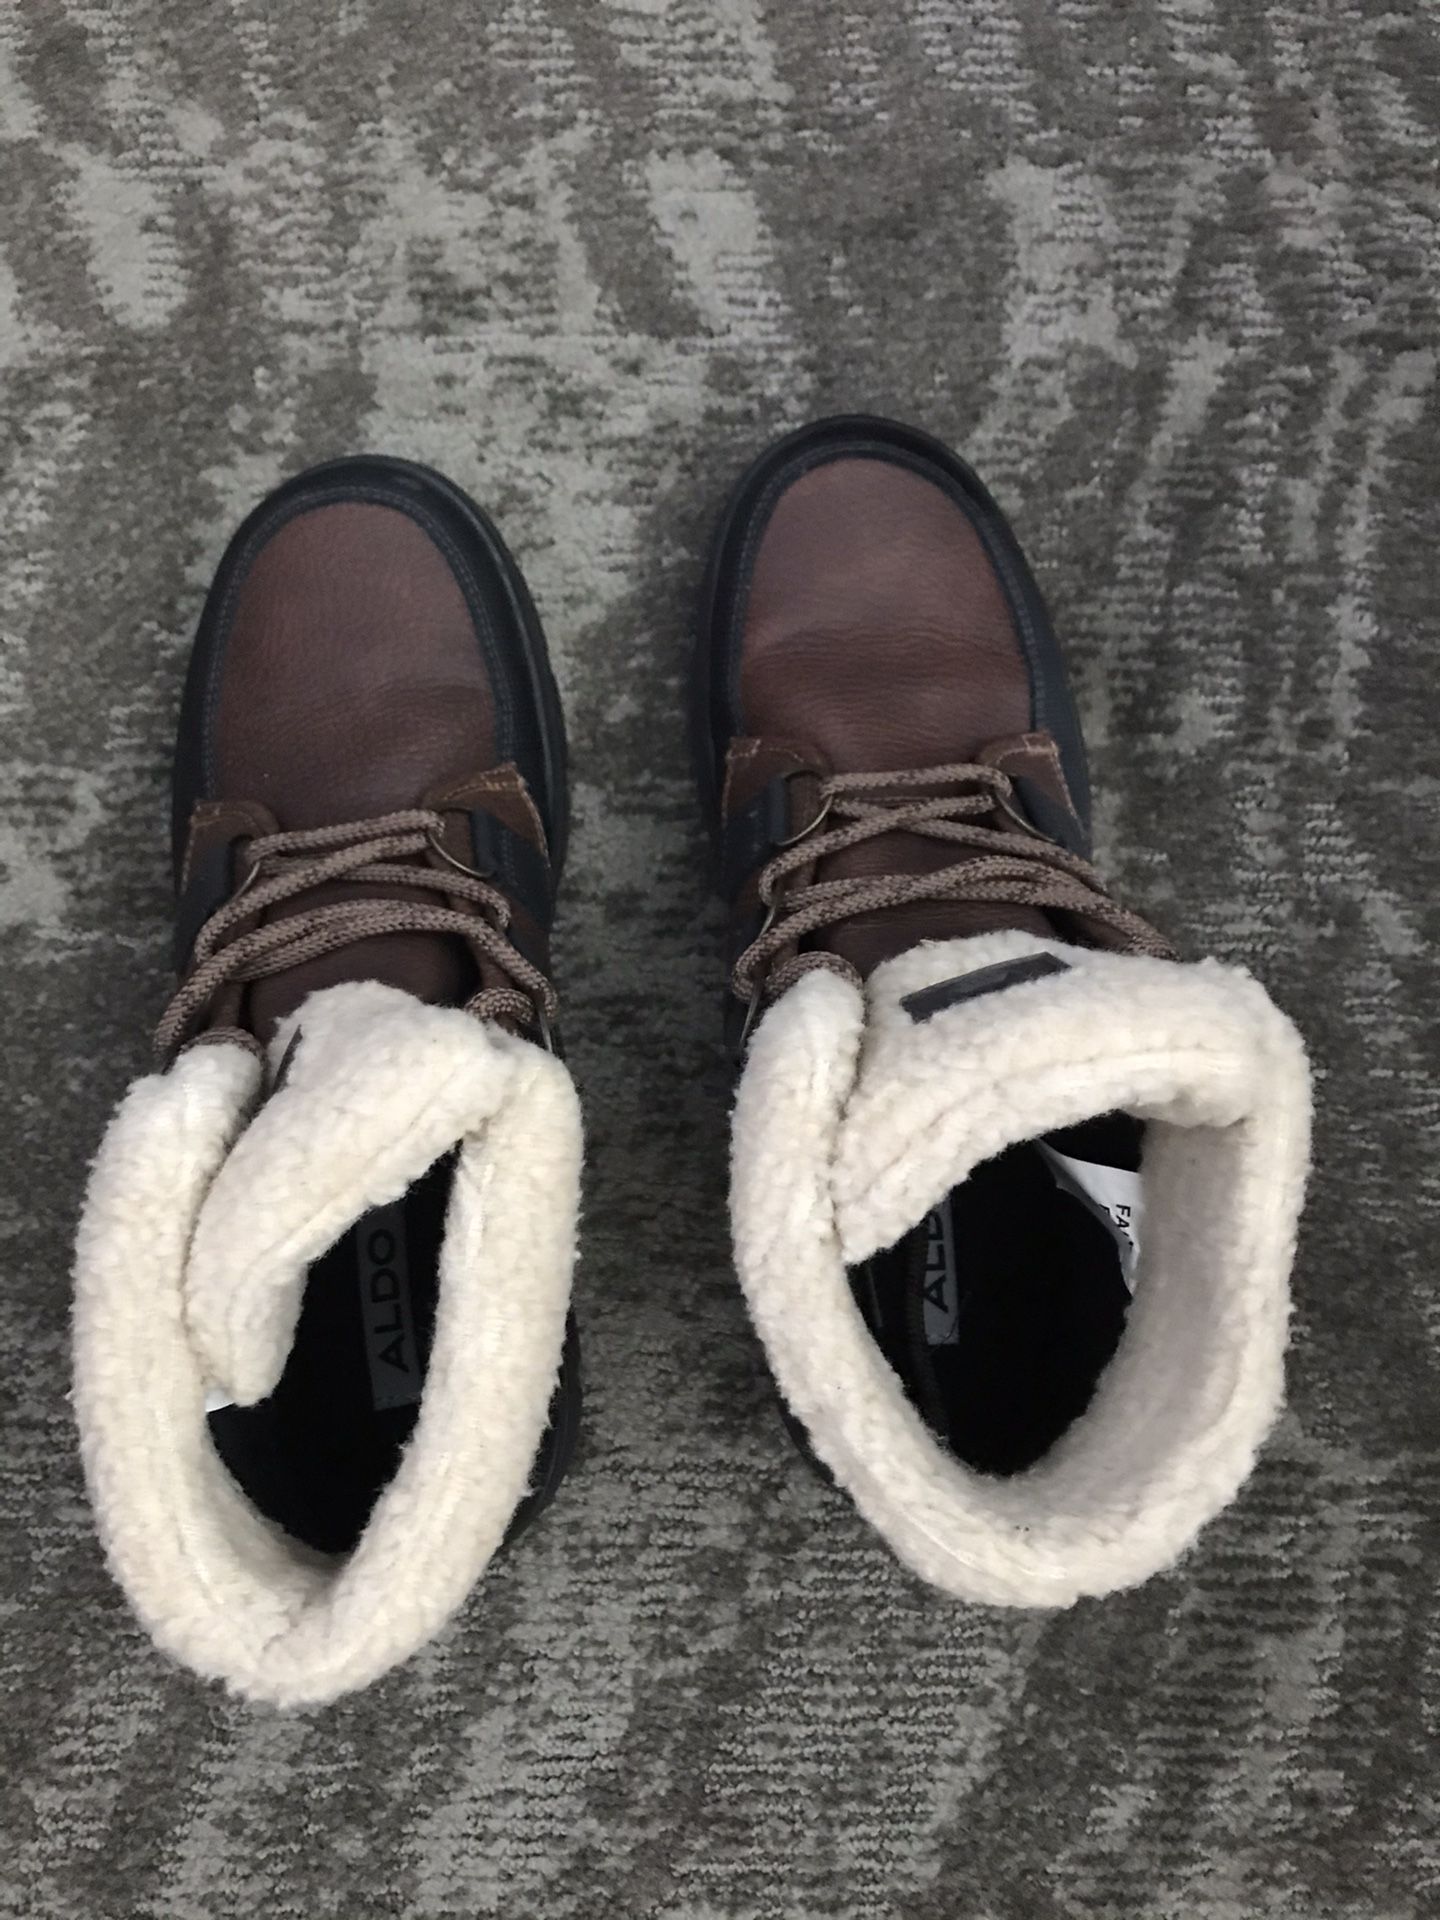 New Weatherproof Aldo boots